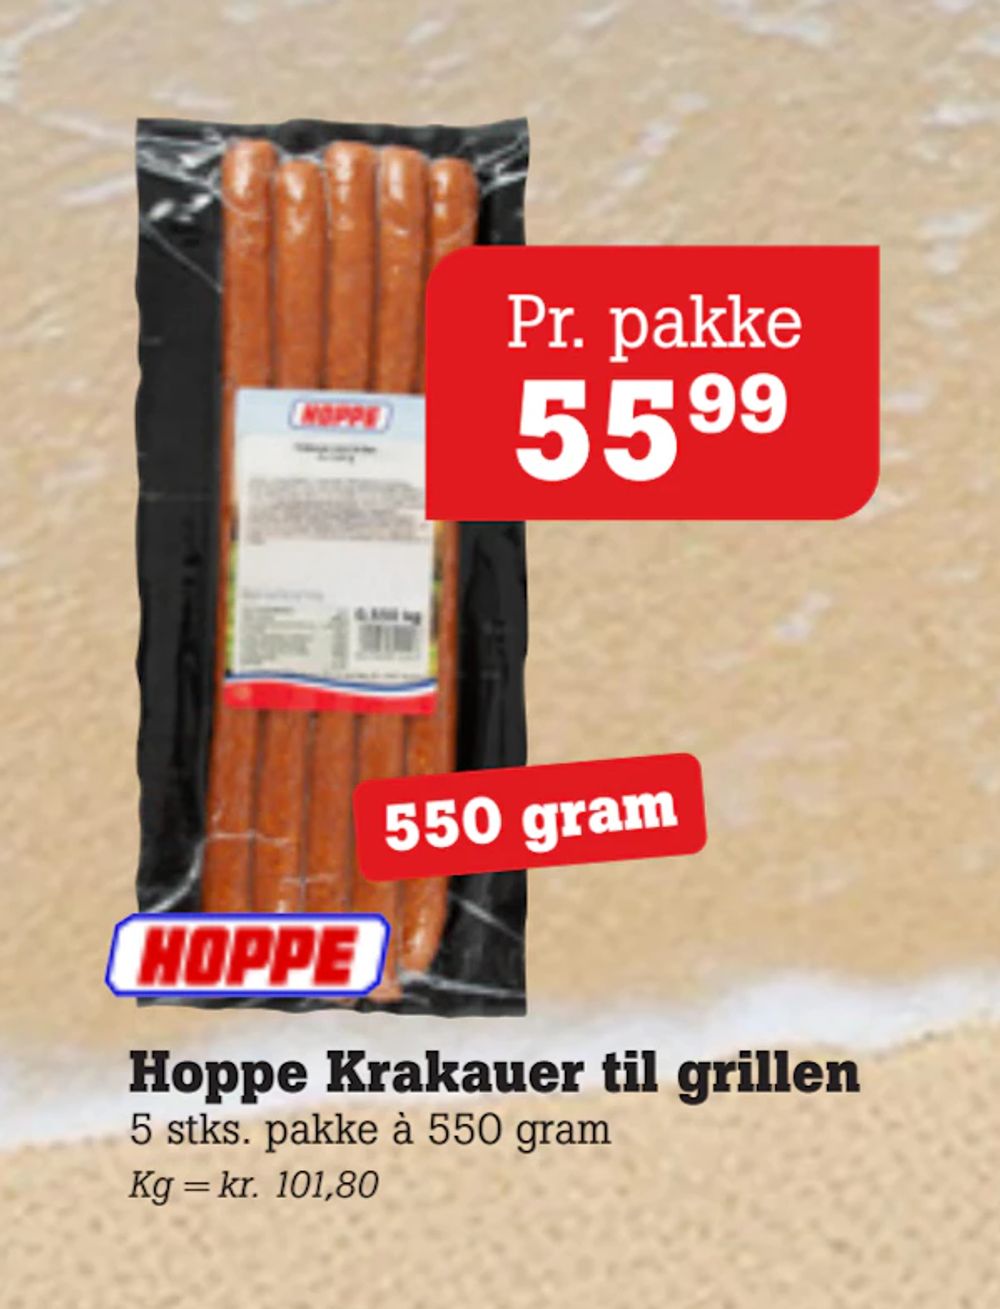 Tilbud på Hoppe Krakauer til grillen fra Poetzsch Padborg til 55,99 kr.